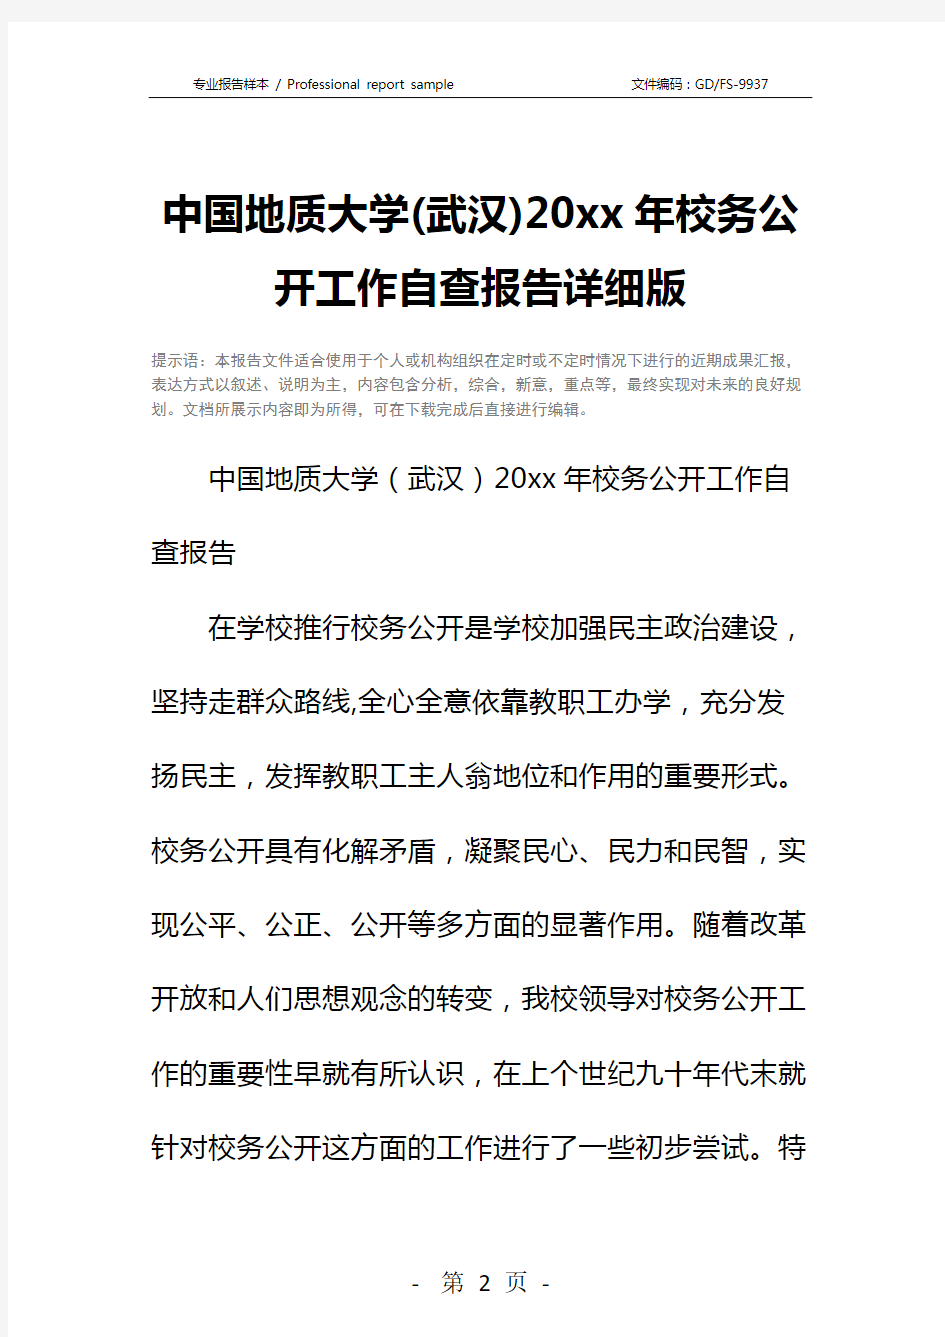 中国地质大学(武汉)20xx年校务公开工作自查报告详细版